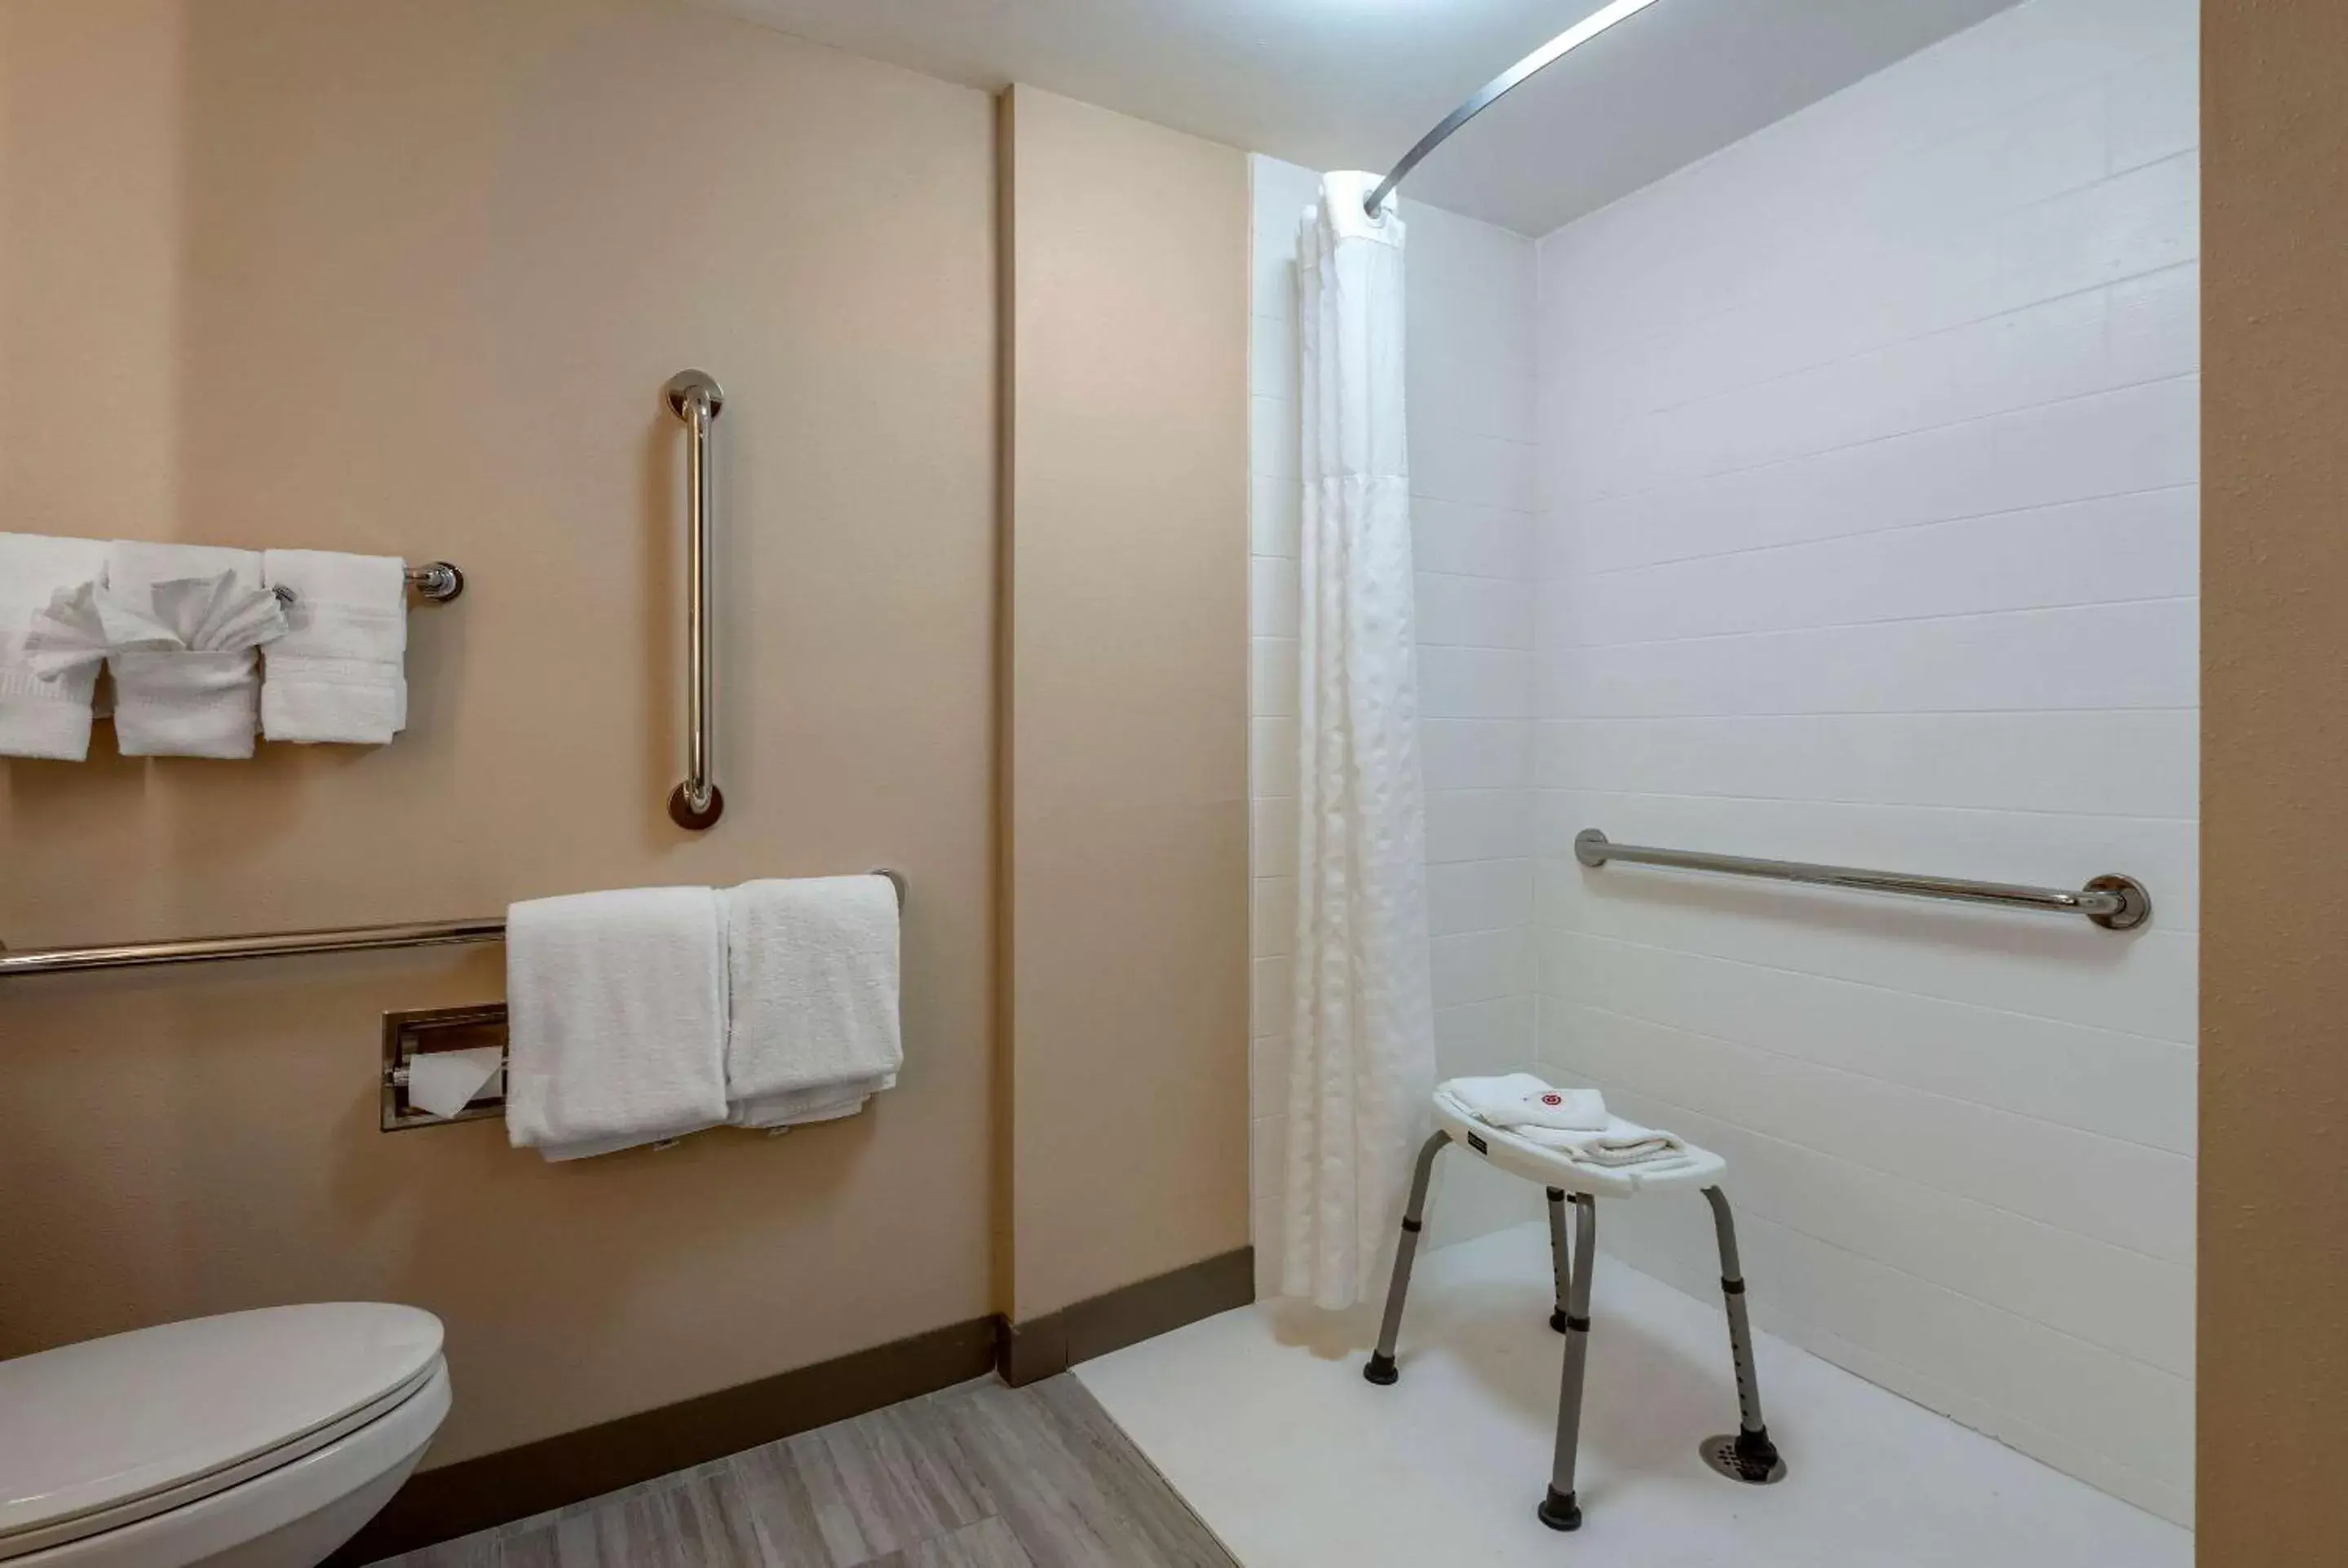 Bedroom, Bathroom in Comfort Inn Horsham - Philadelphia